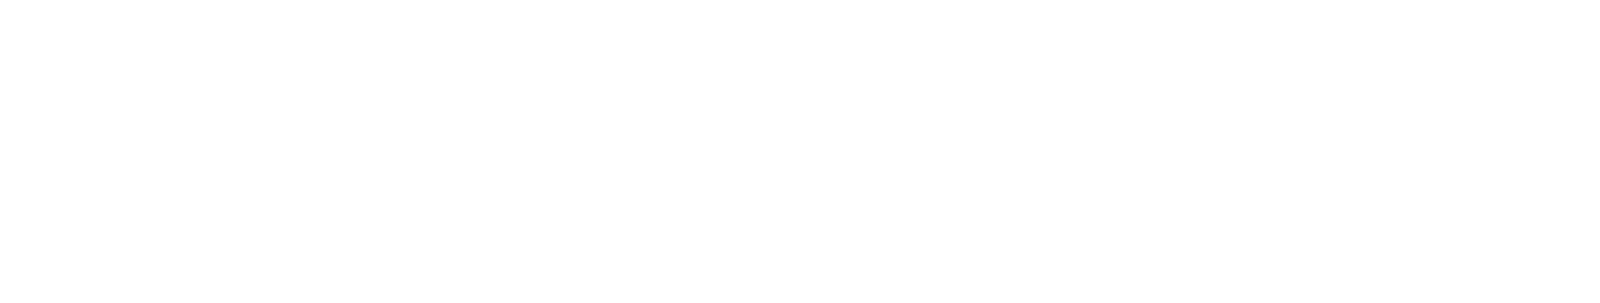 Westpac Banking logo grand pour les fonds sombres (PNG transparent)